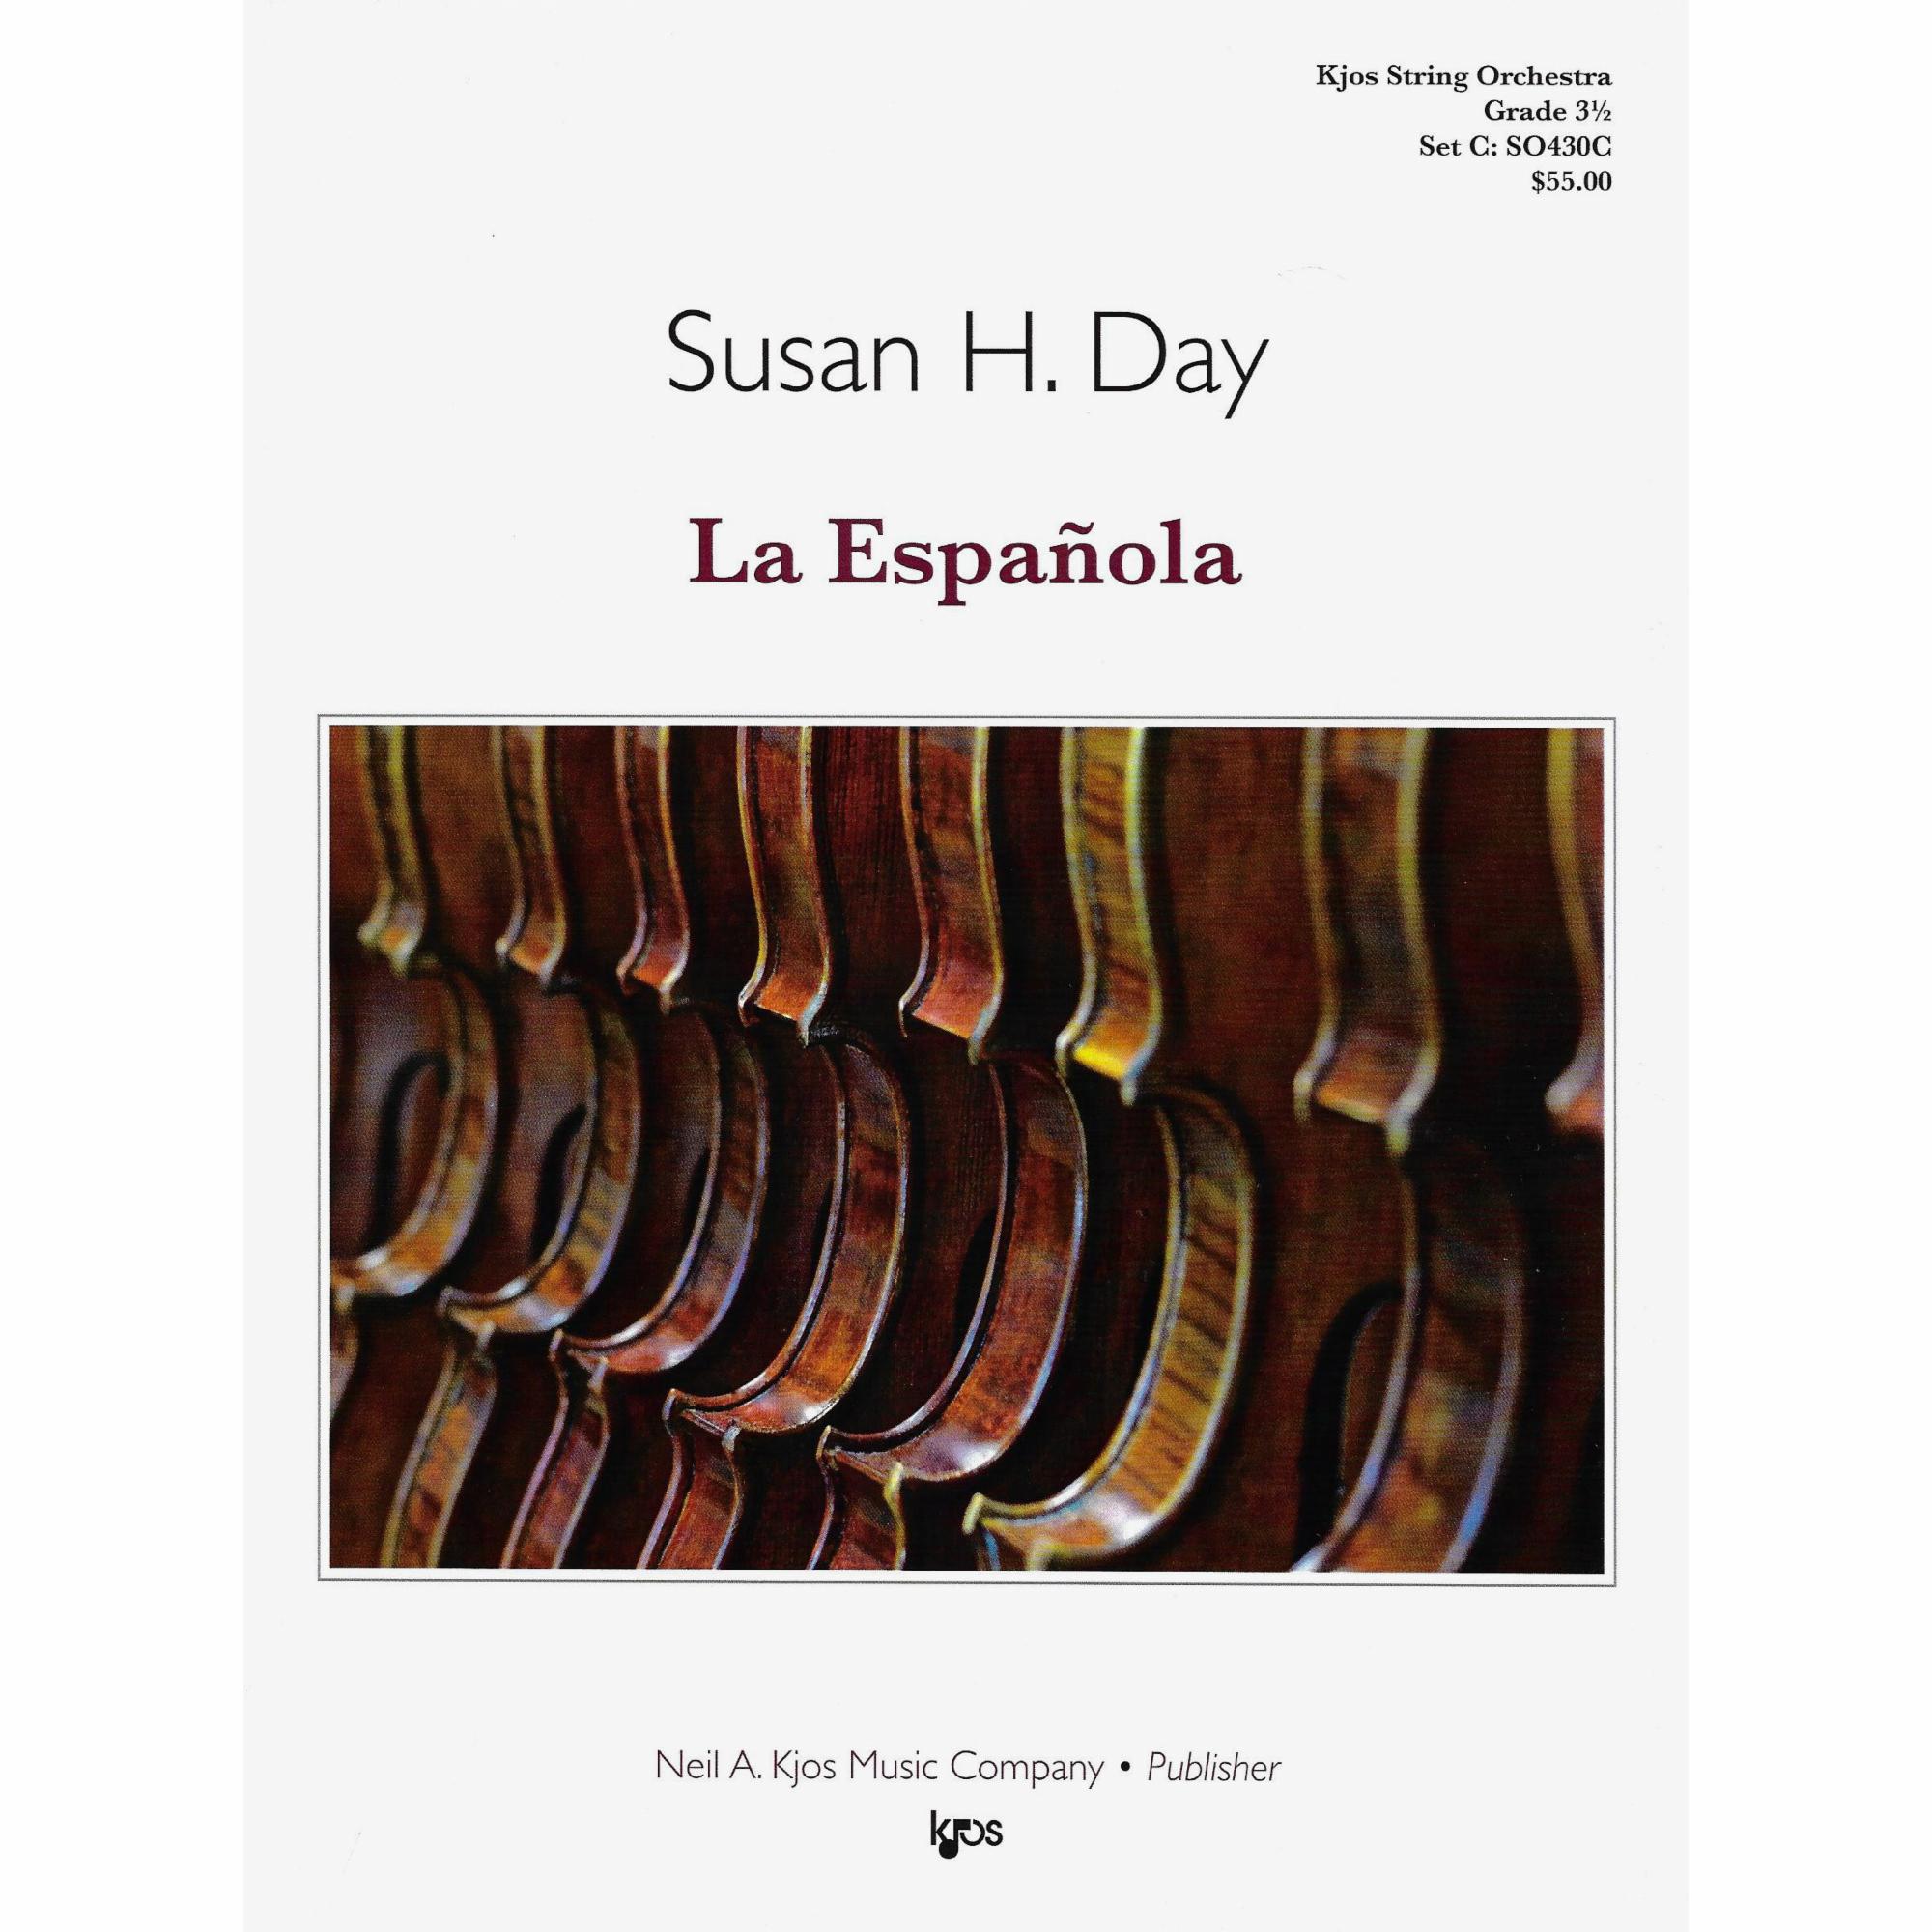 La Espanola for String Orchestra